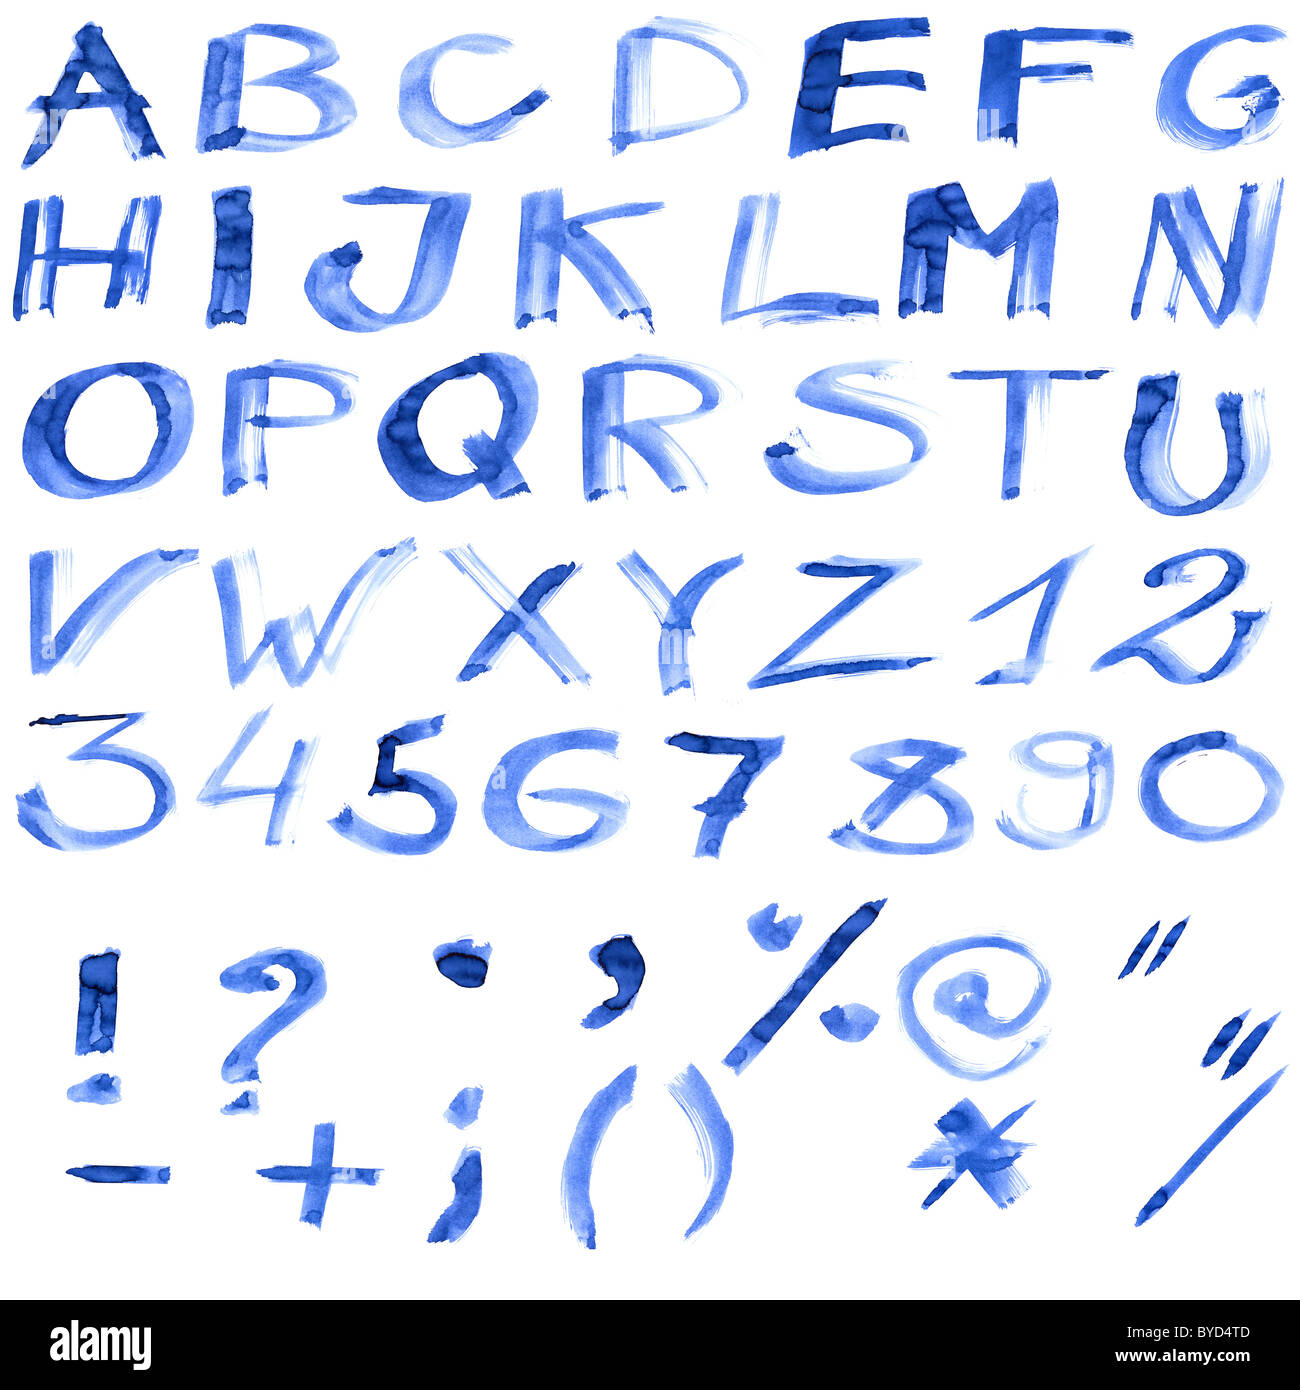 Grunge encre manuscrite alphabet, isolé sur fond blanc Banque D'Images